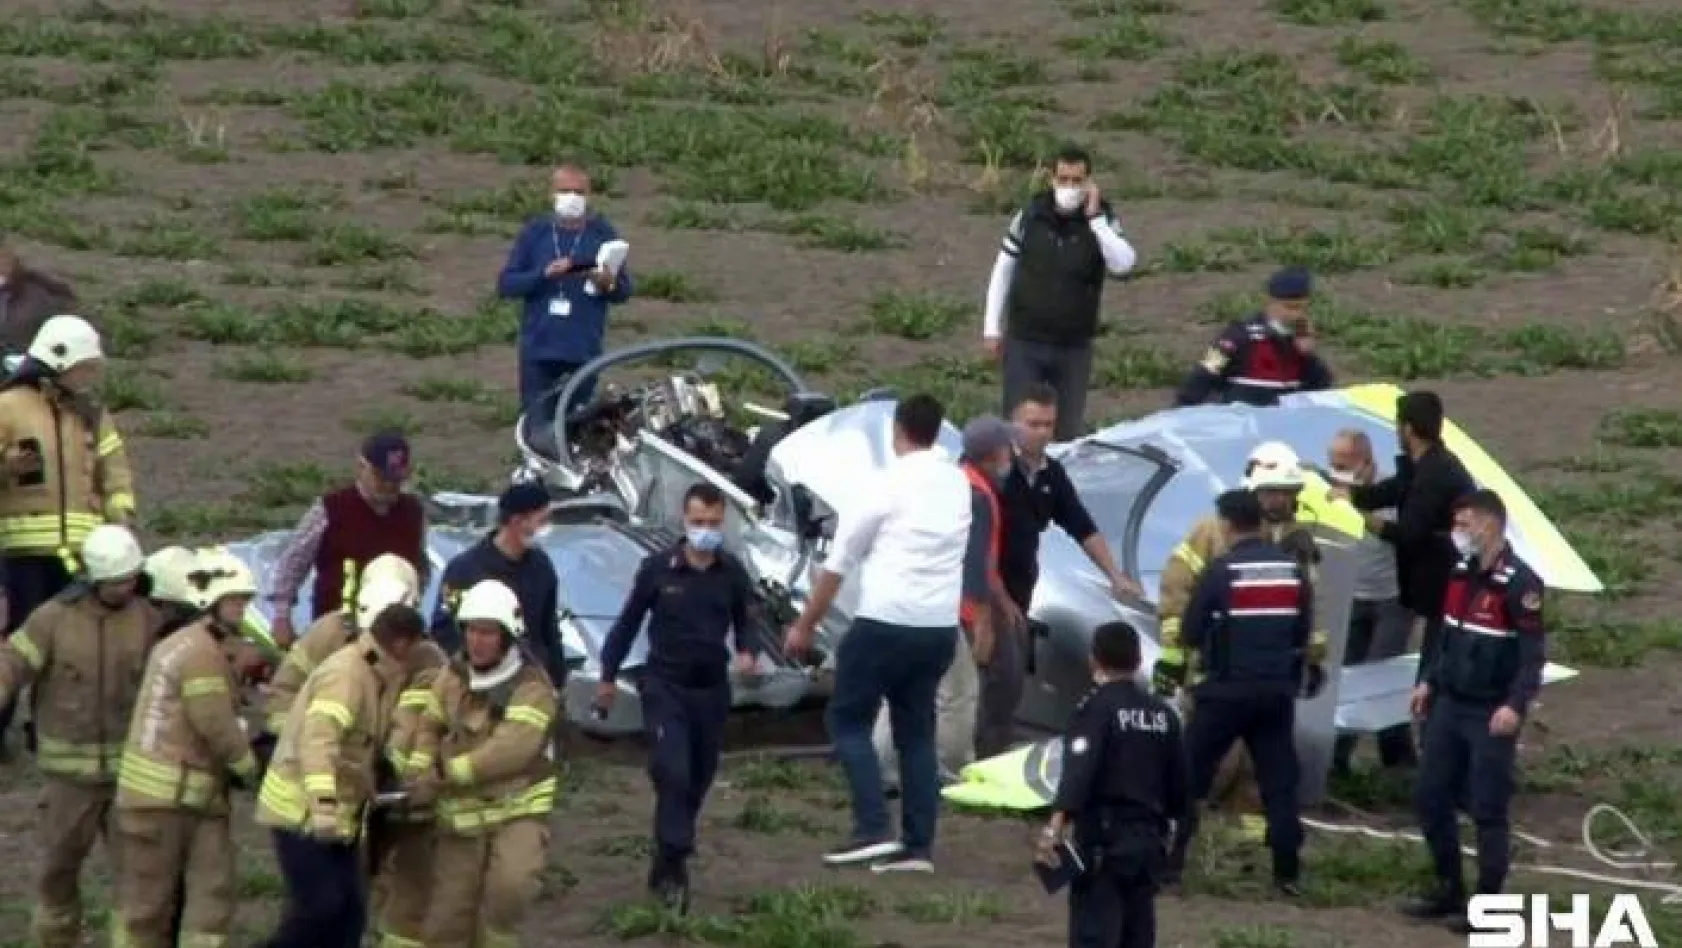 İstanbul Hezarfen Havalimanı'ndan havalanan  bir eğitim uçağı düştü. Uçağın pilotu yaralı olarak kurtarıldı. Pilot 112 ekipleri tarafından hastaneye kaldırılıyor. Ekiplerin olay yerinde incelemesi devam ediyor.